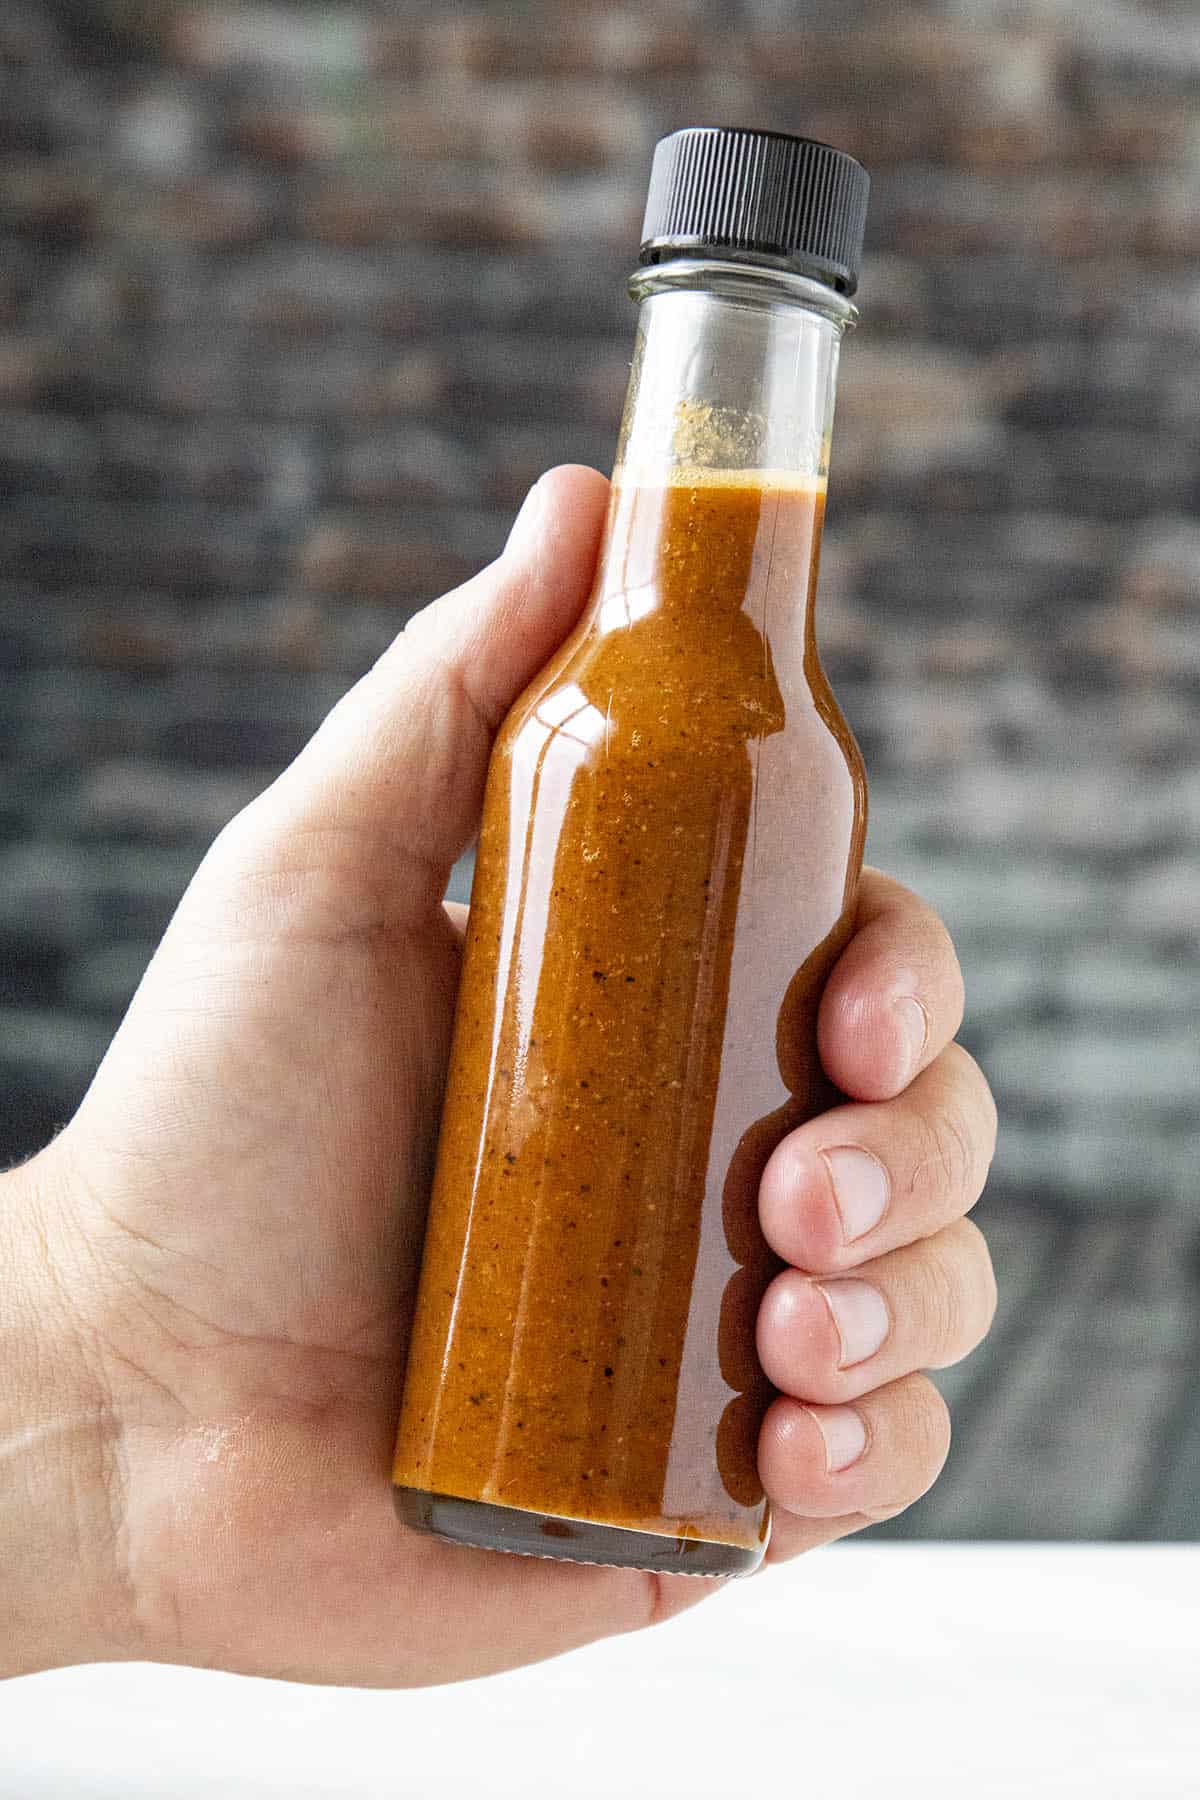 Carolina Reaper Hot Sauce Recipe - Chili Pepper Madness